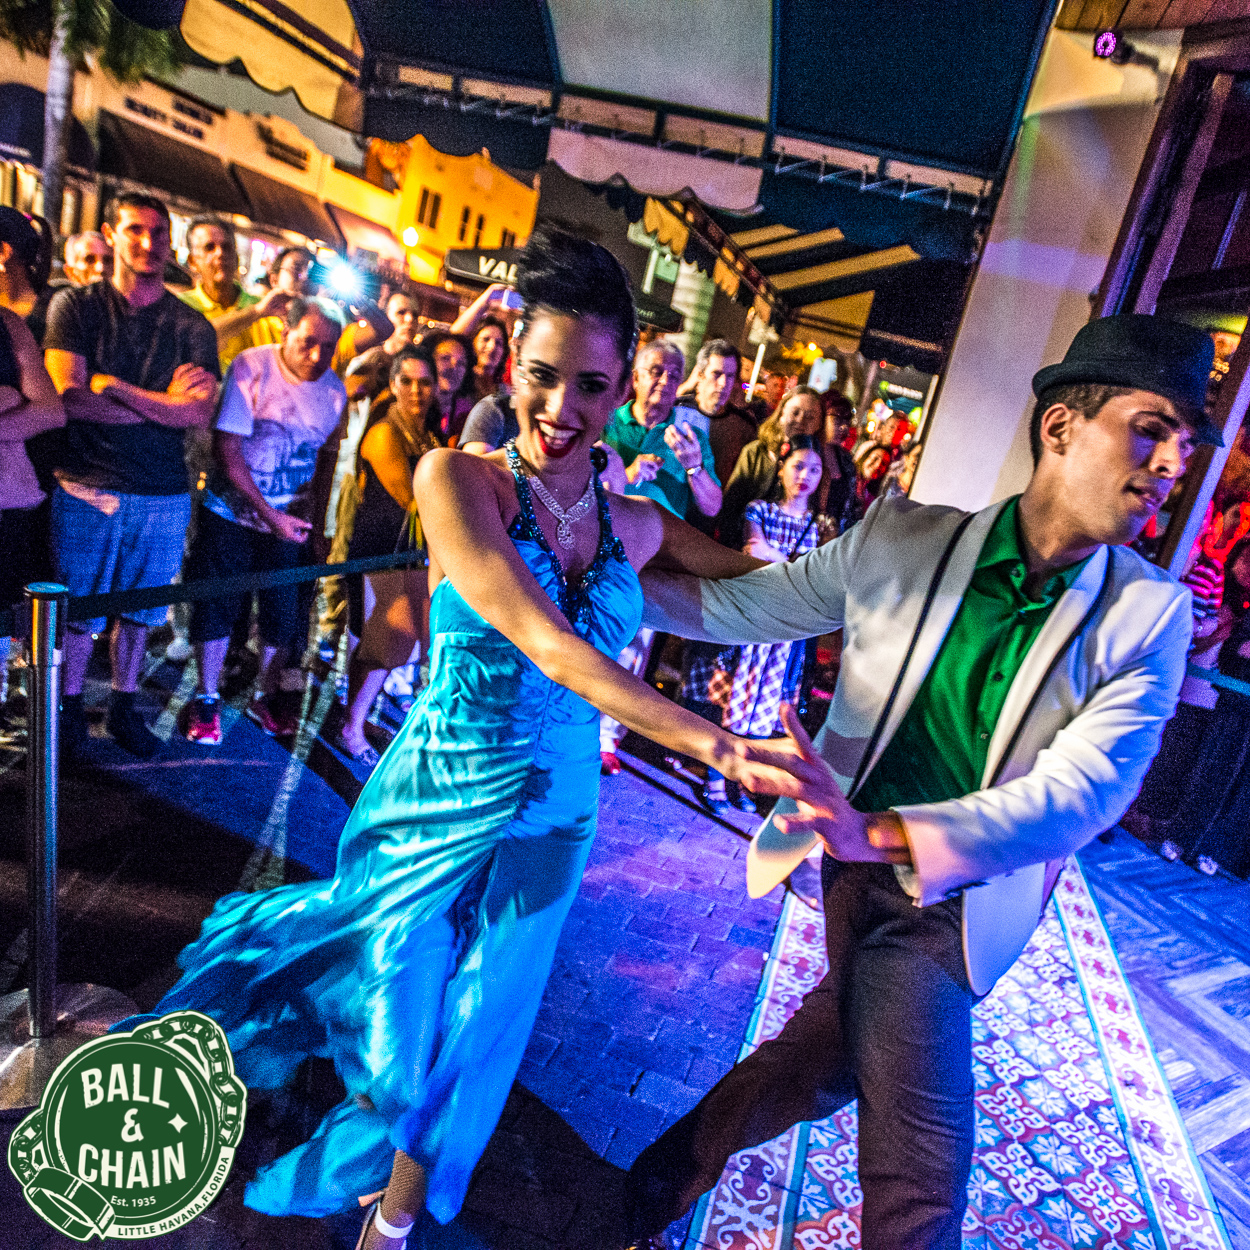 Havana's Last Dance - BallNine